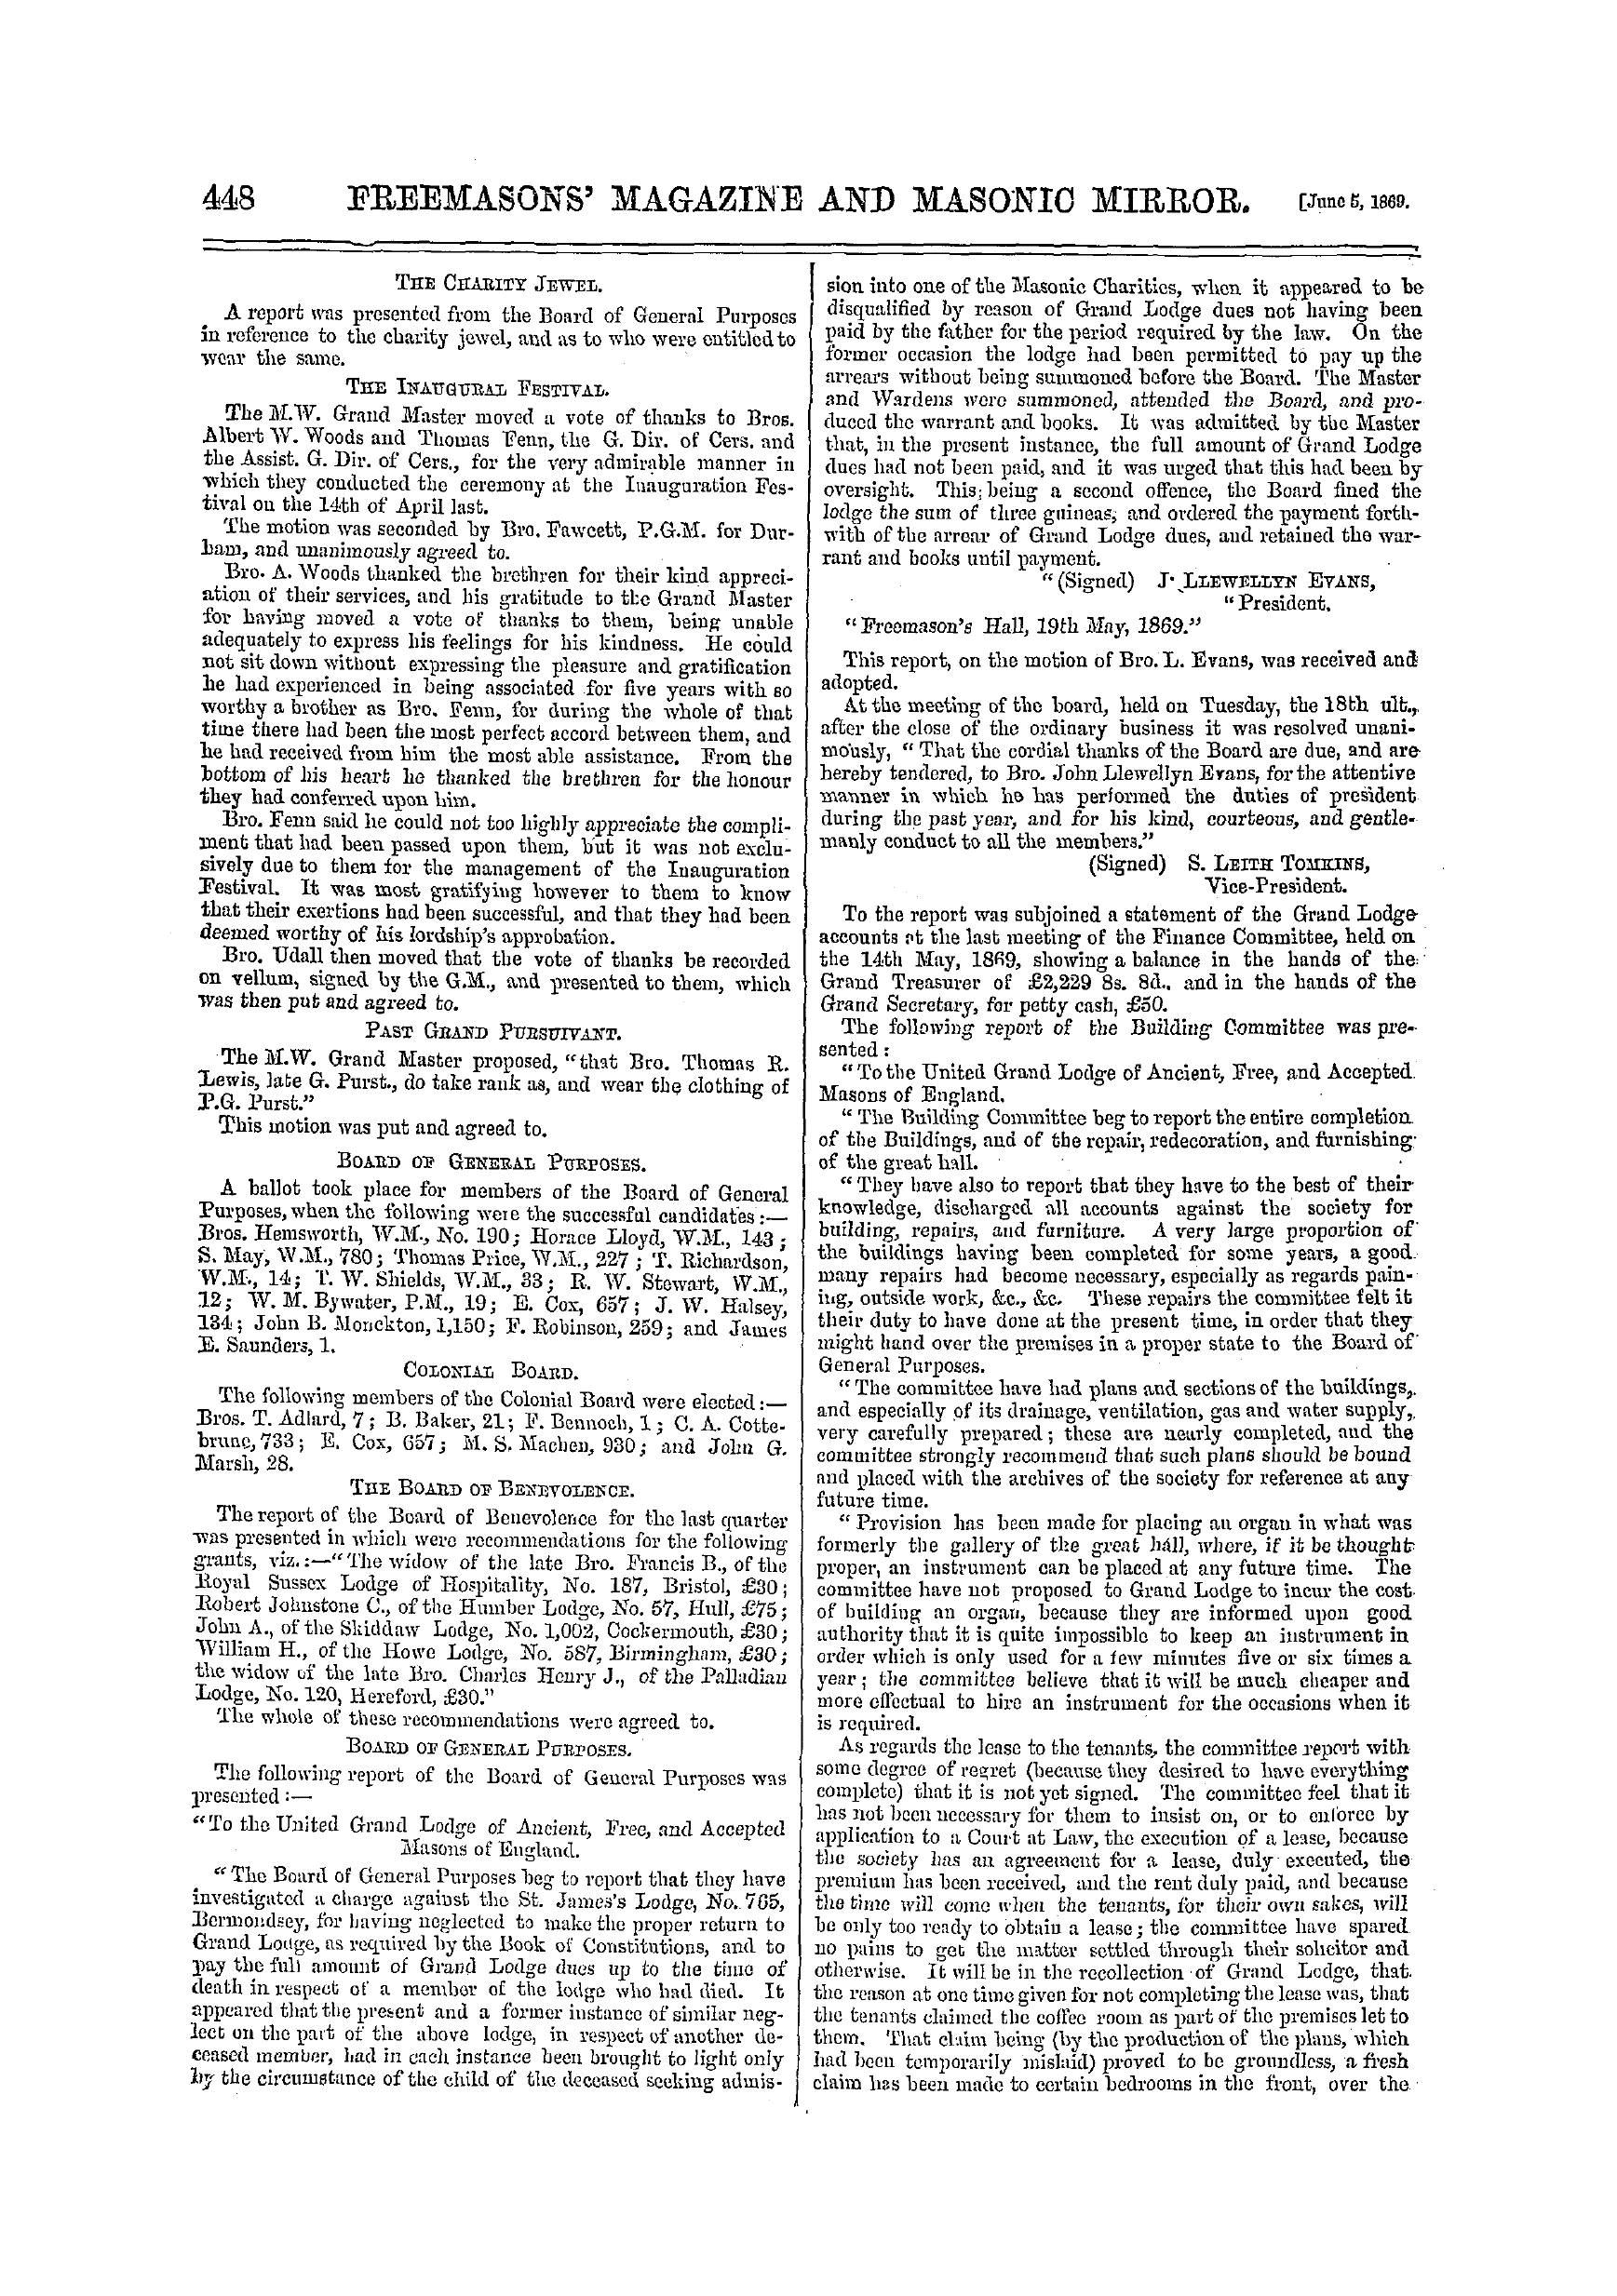 The Freemasons' Monthly Magazine: 1869-06-05: 8